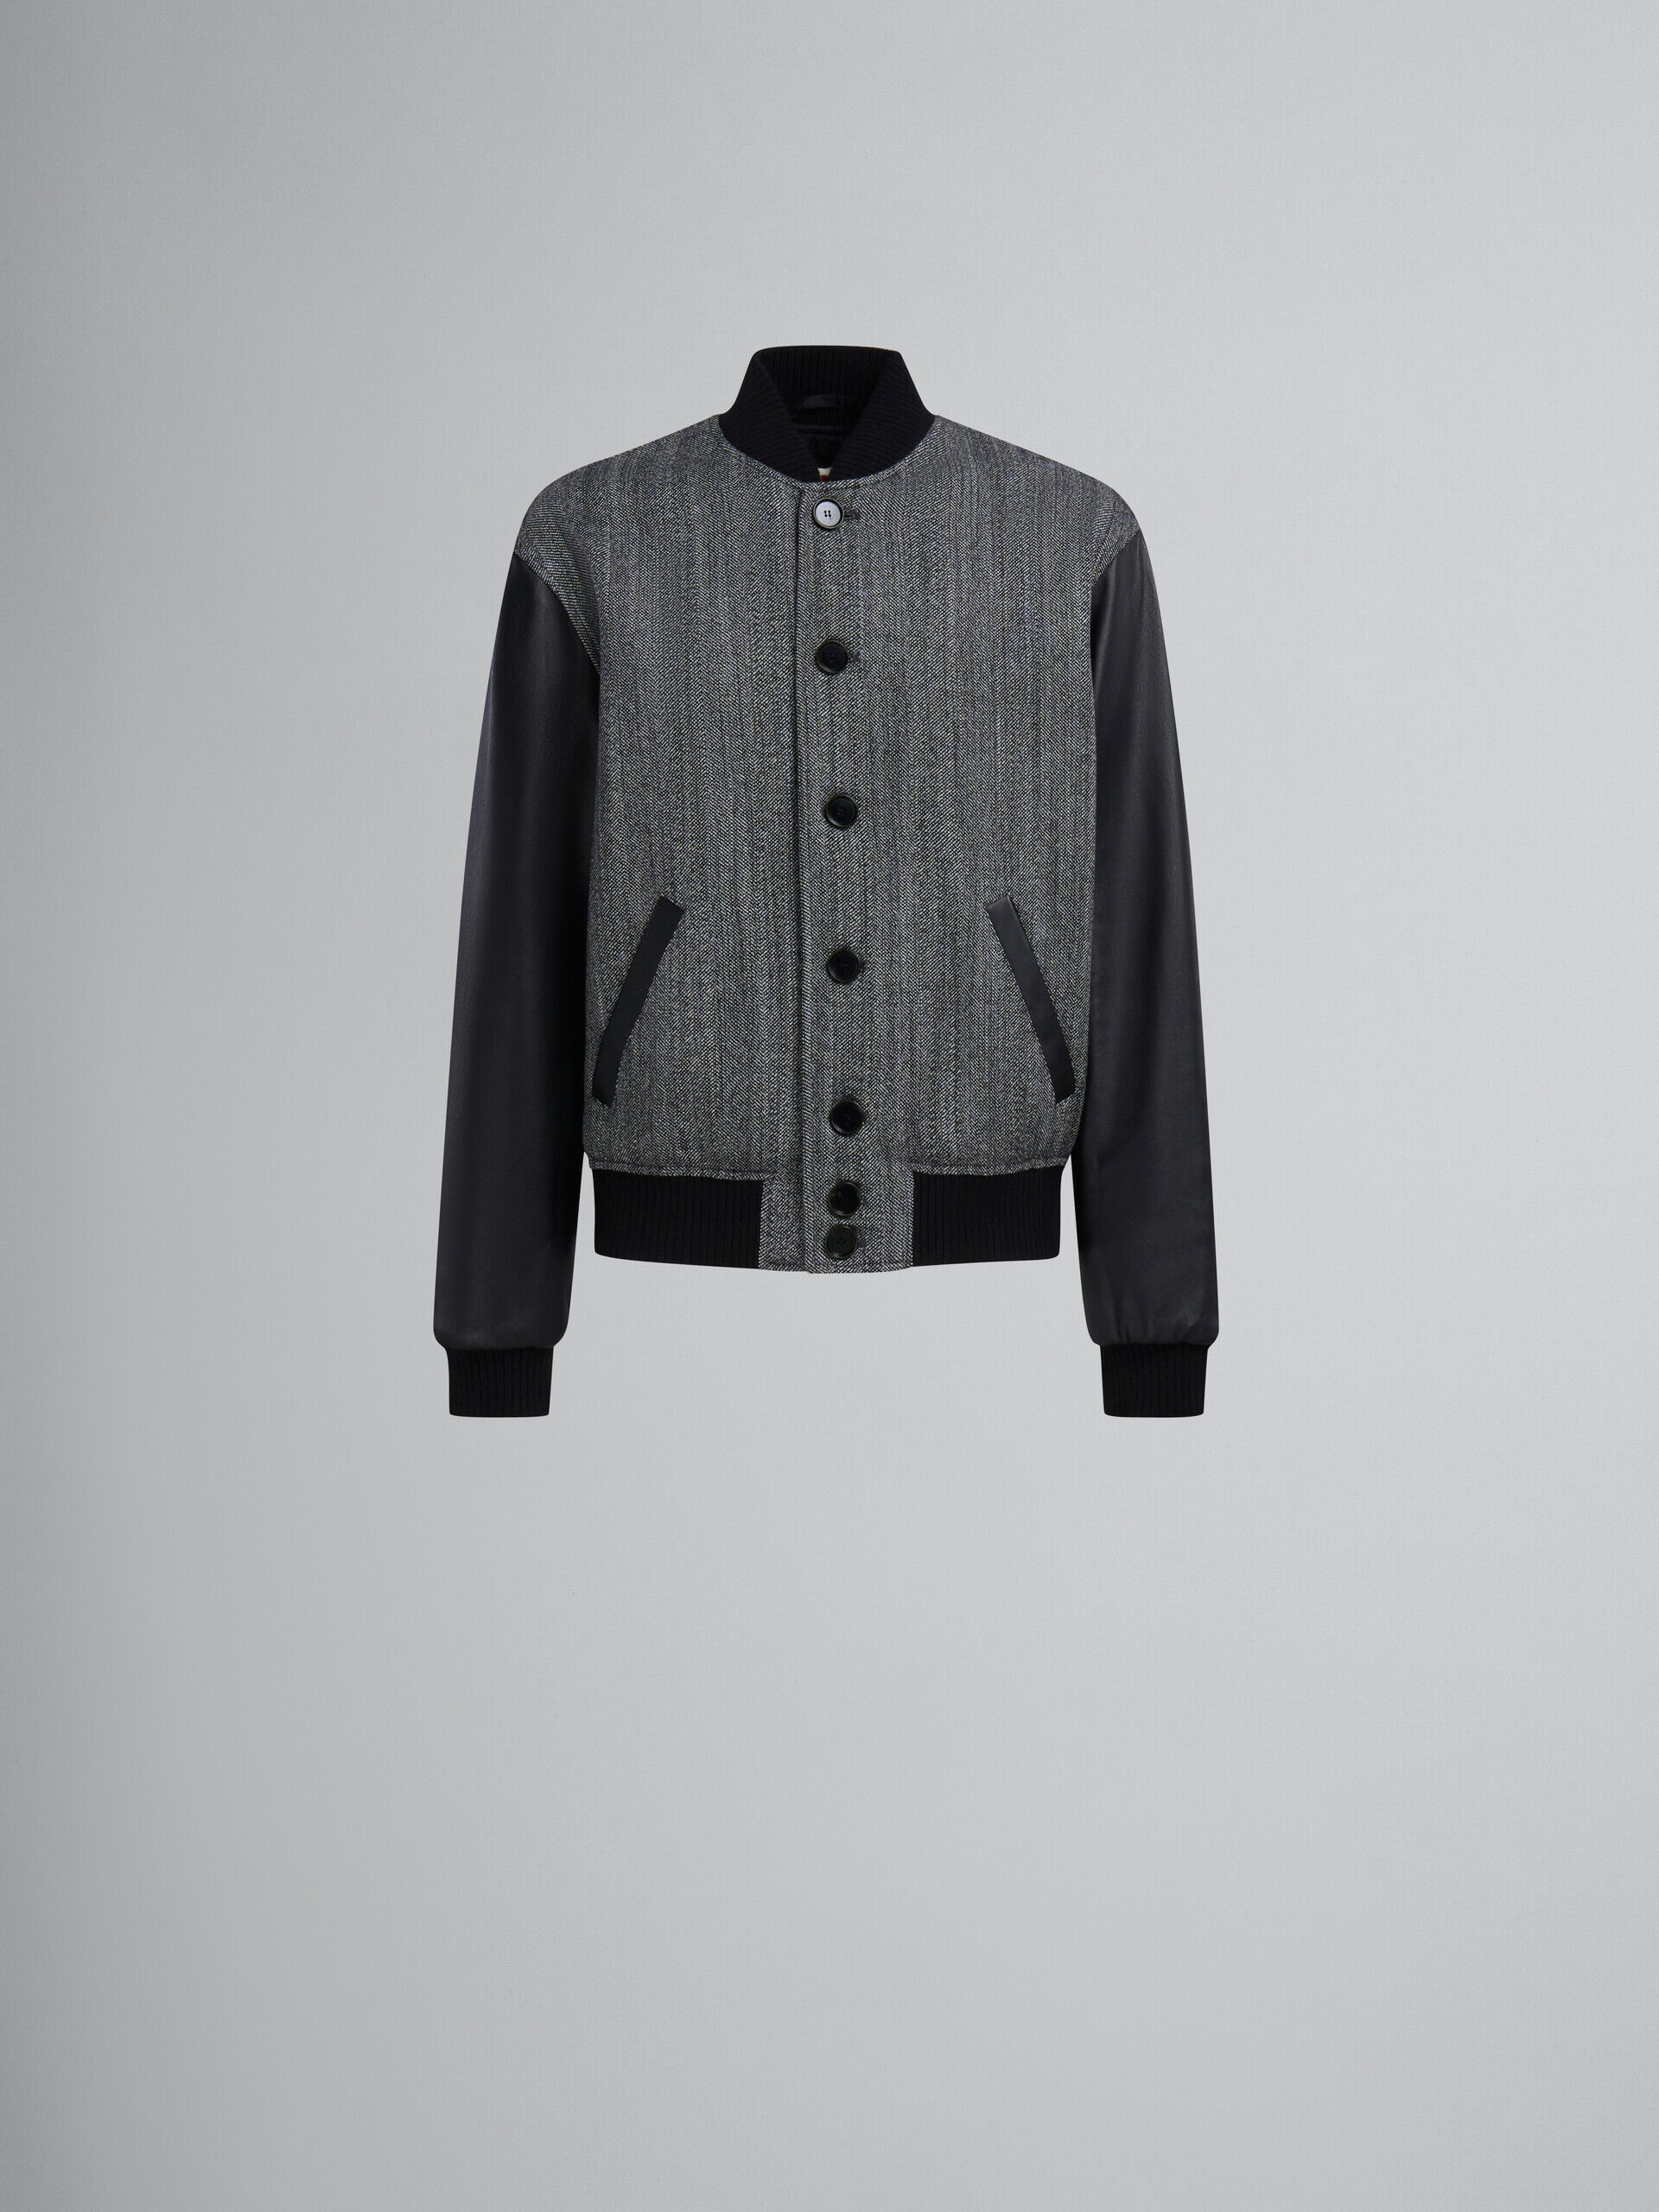 ブラック ヘリンボーンウール製ジャケット、レザー製の袖 | Marni